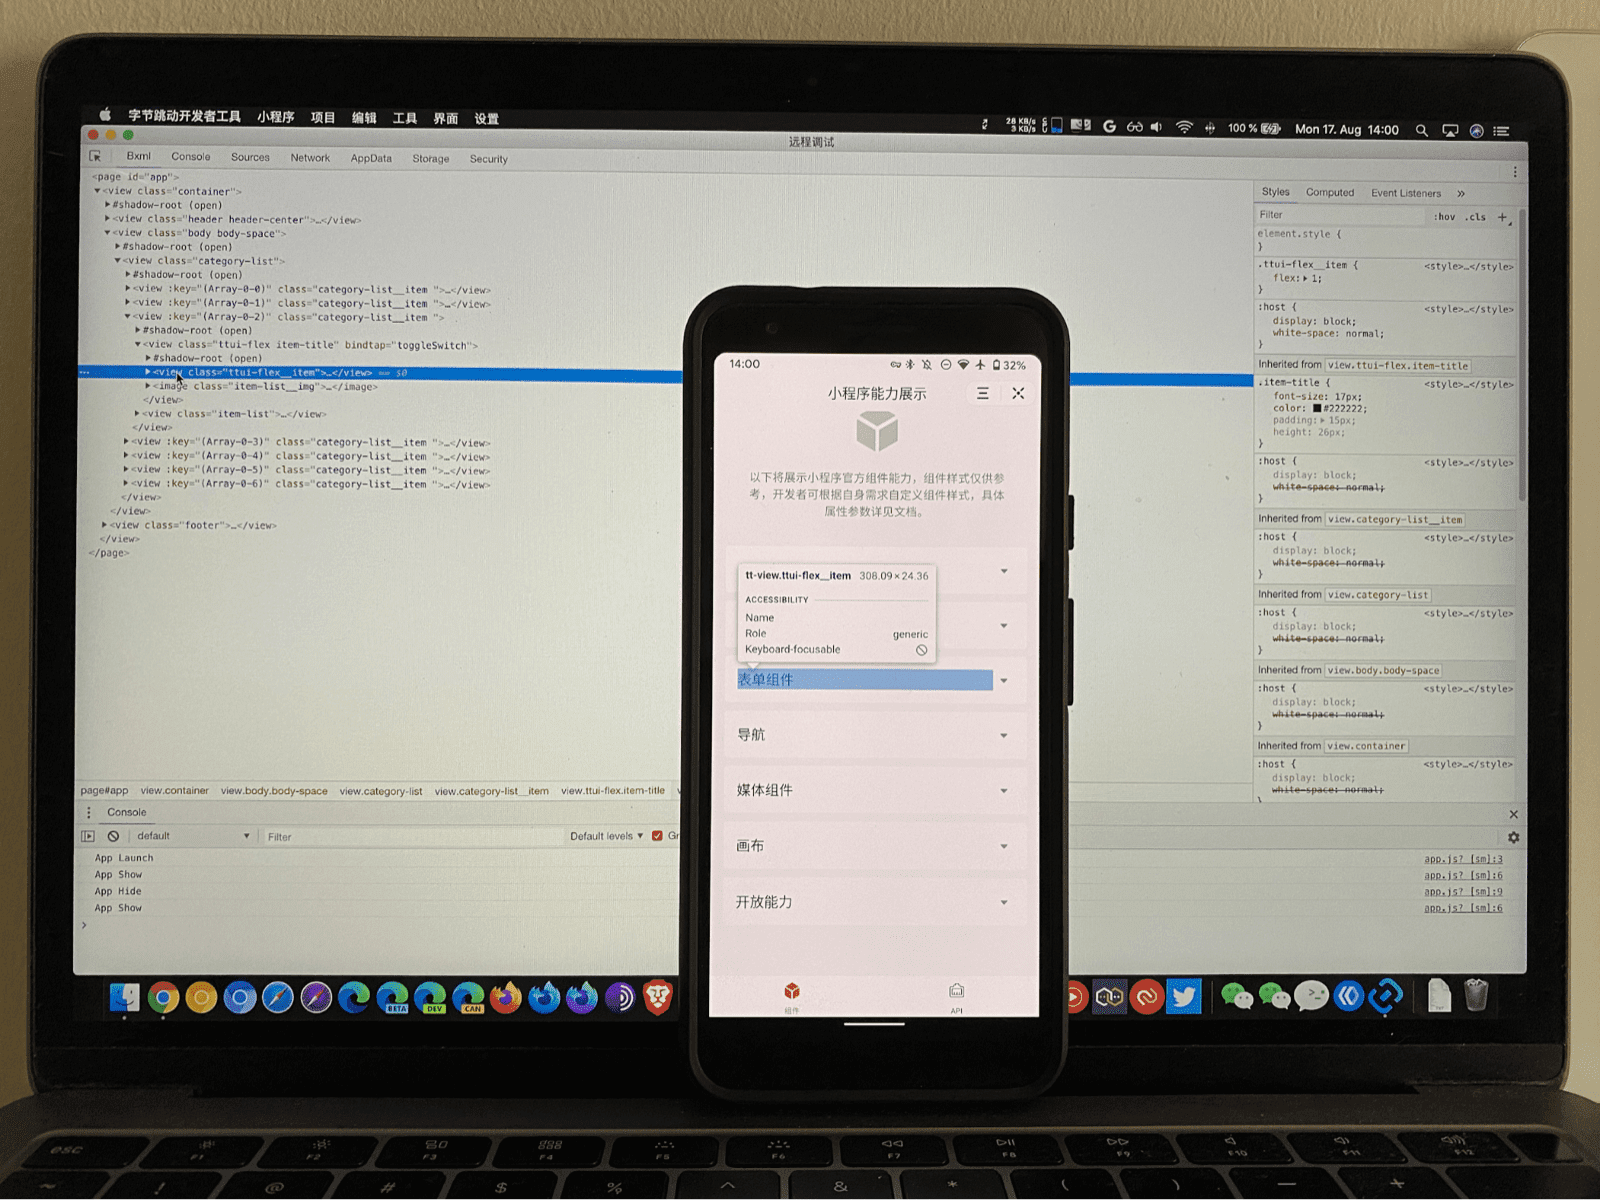 Auf einem Smartphone wird eine Mini-App ausgeführt, auf der Teile der Benutzeroberfläche hervorgehoben sind, die durch den Debugger der ByteDance DevTools auf einem Laptop geprüft werden.